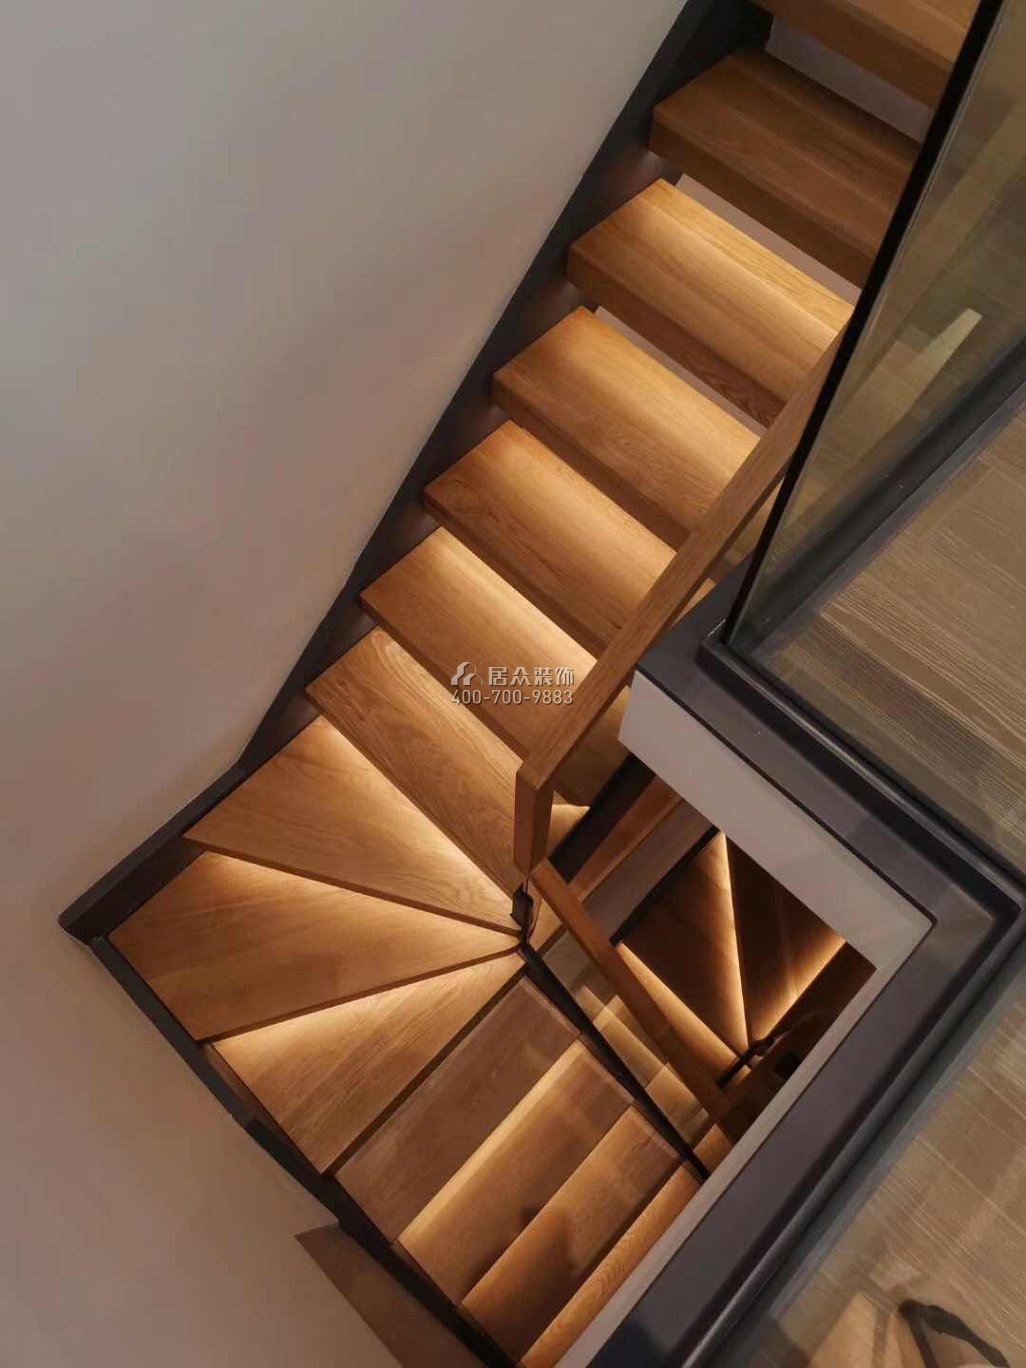 招商海德公园250平方米现代简约风格复式户型楼梯装修效果图